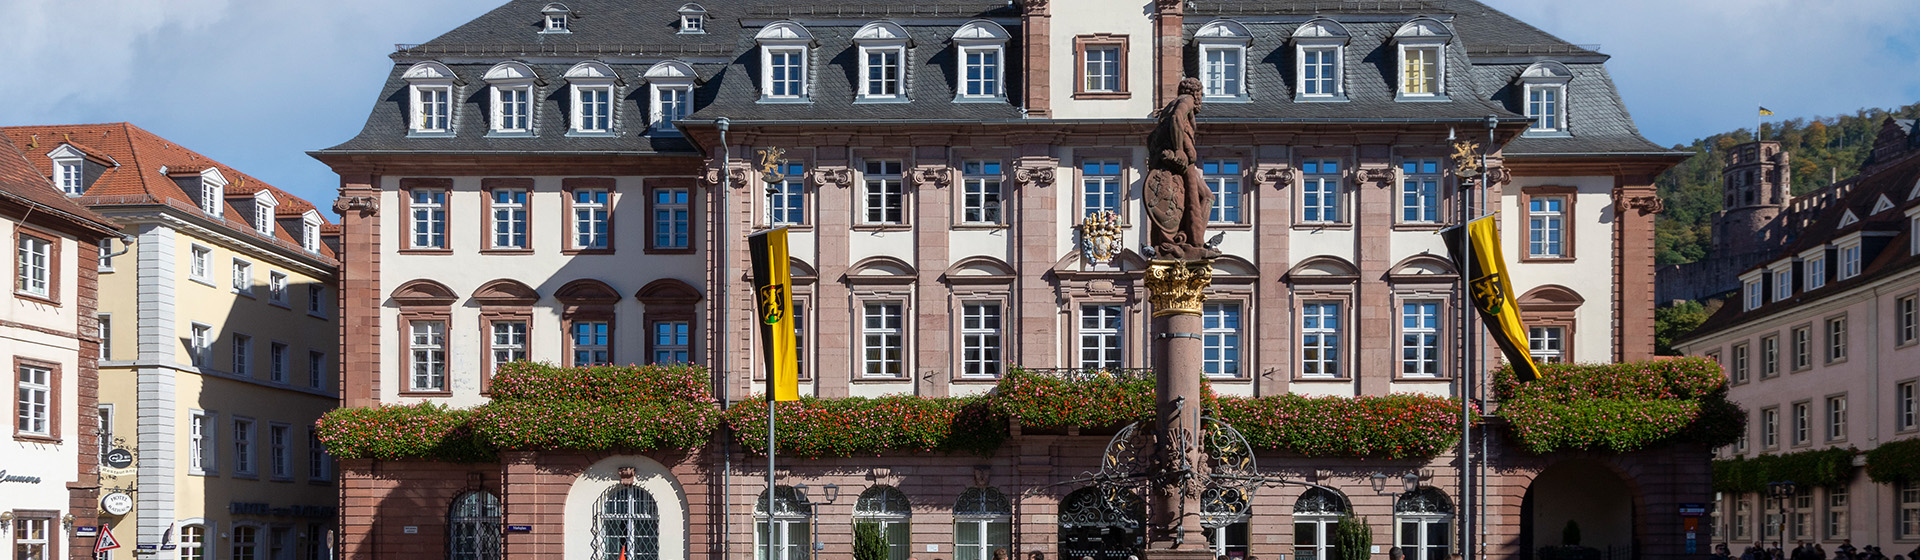 Rathaus in Heidelberg